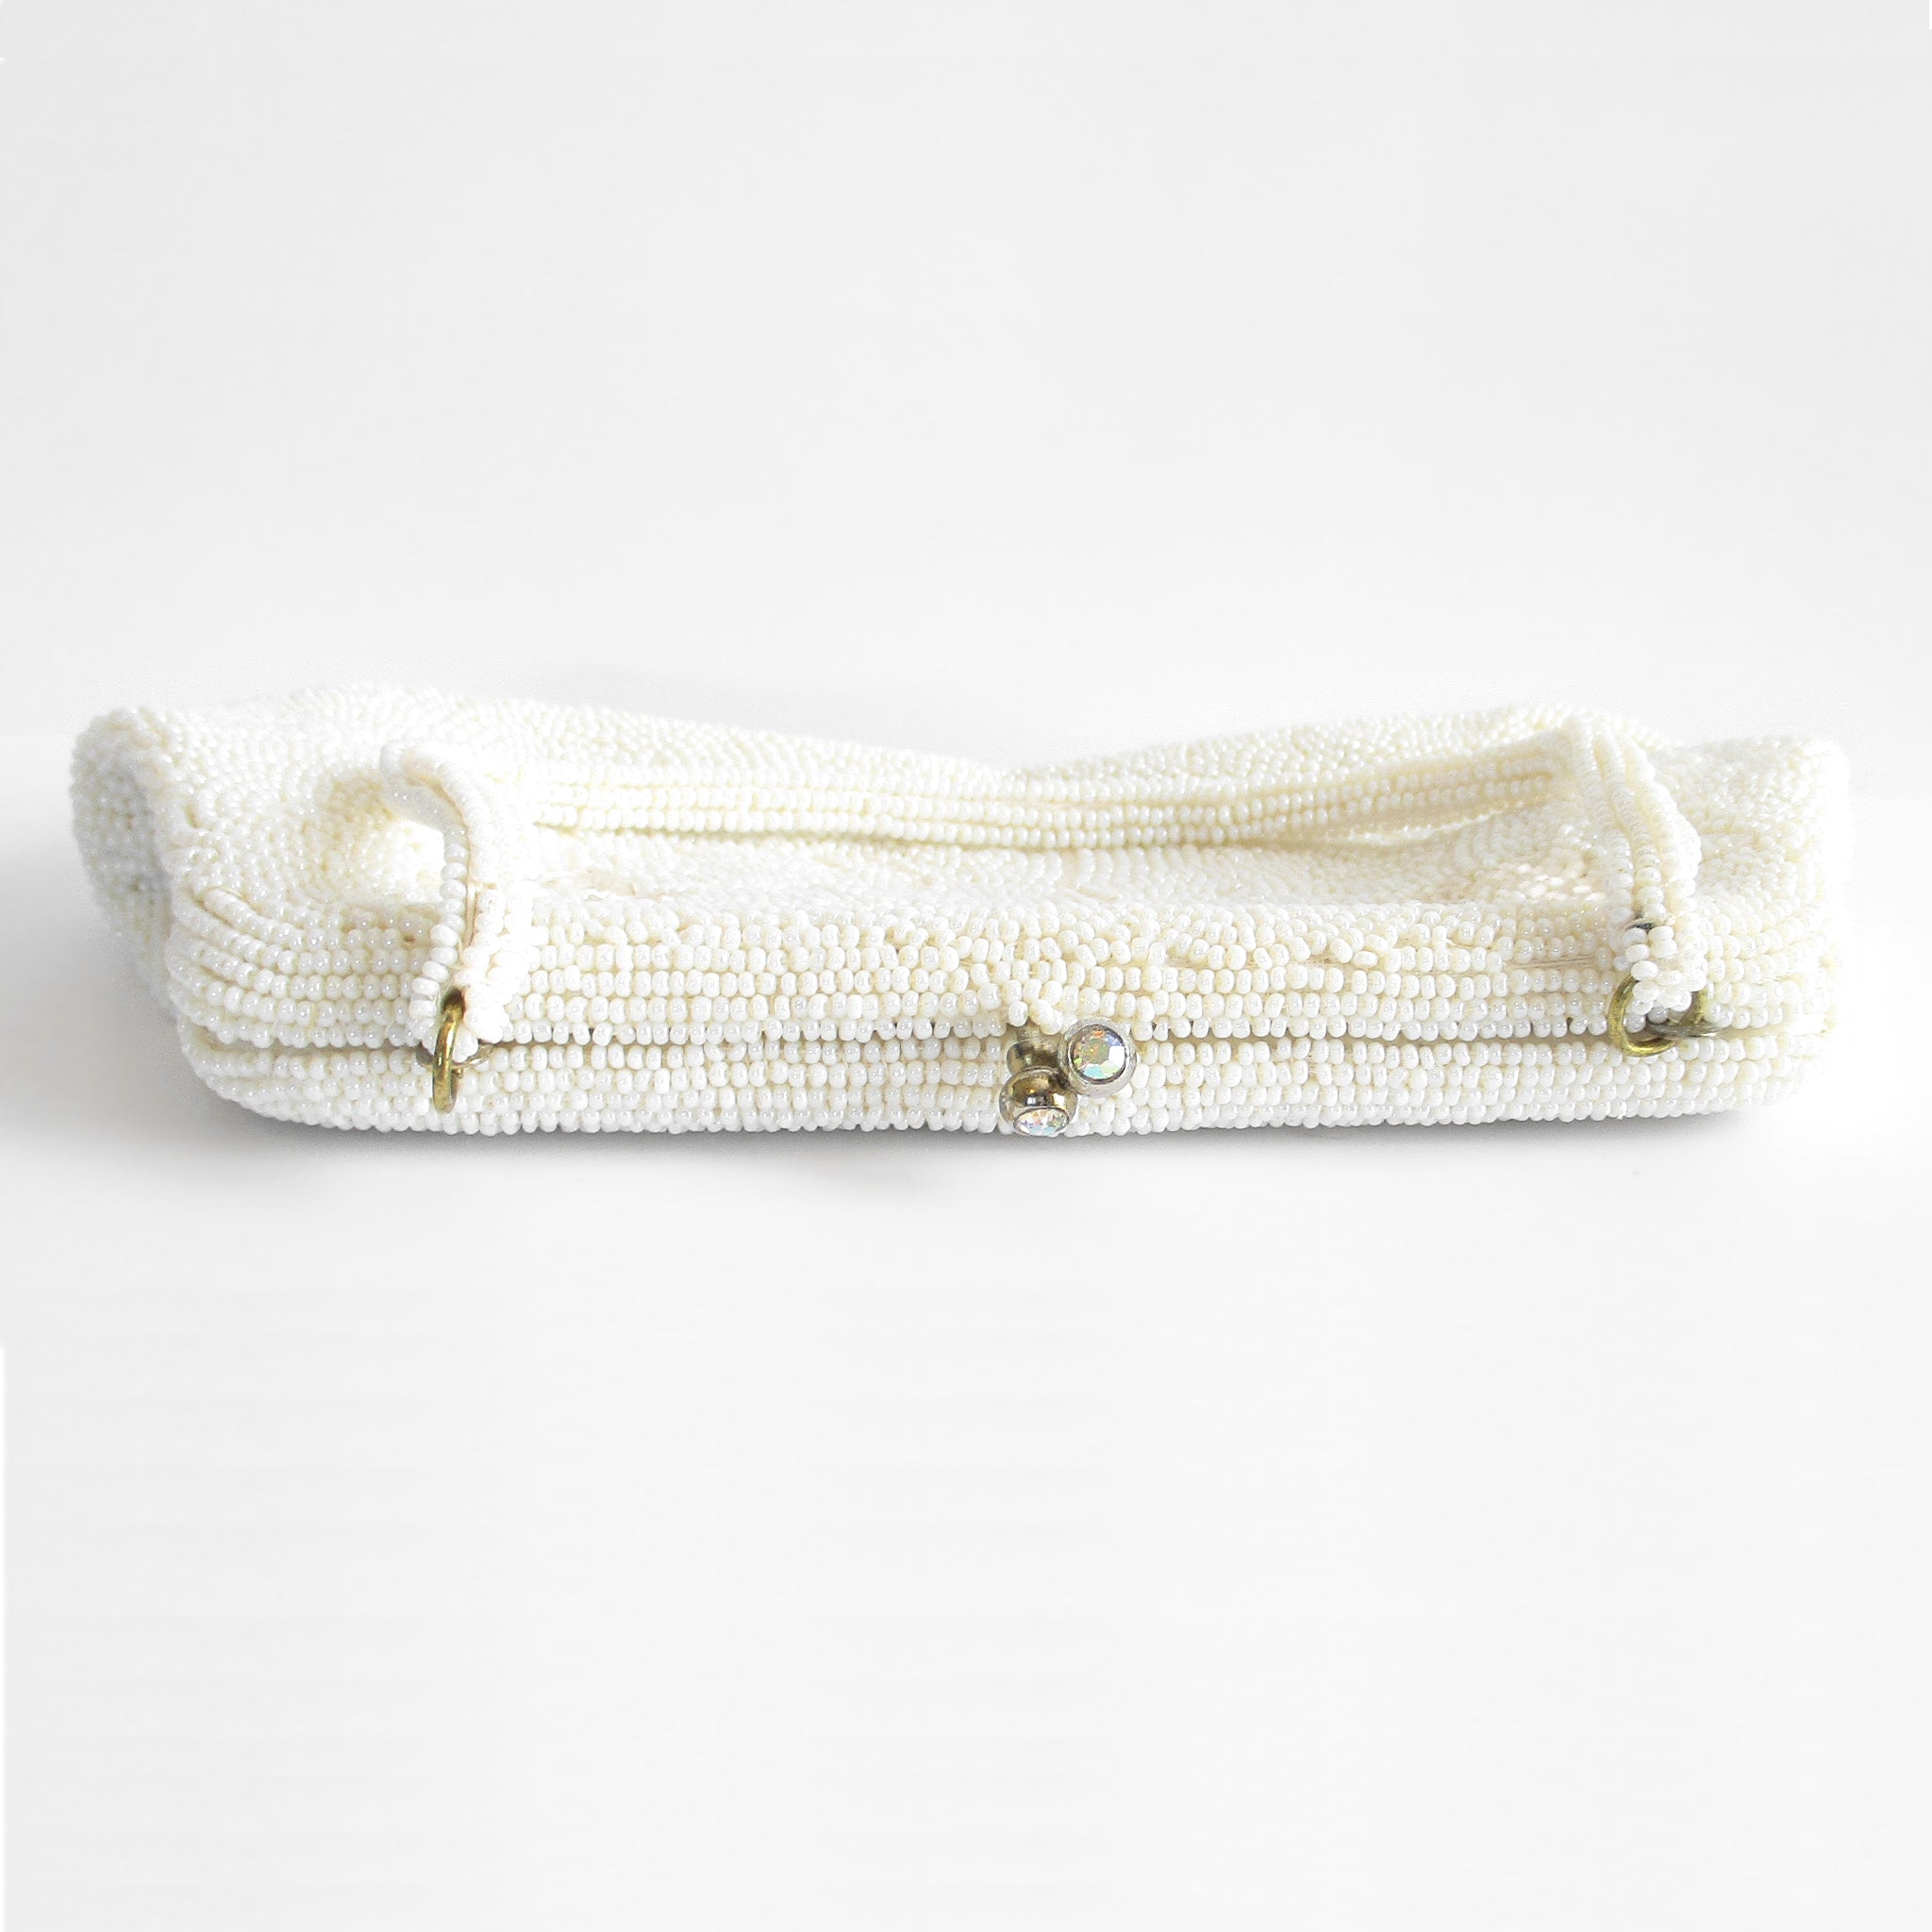 Koppi by La Regale LTD White Vintage Microbead Purse Bag 